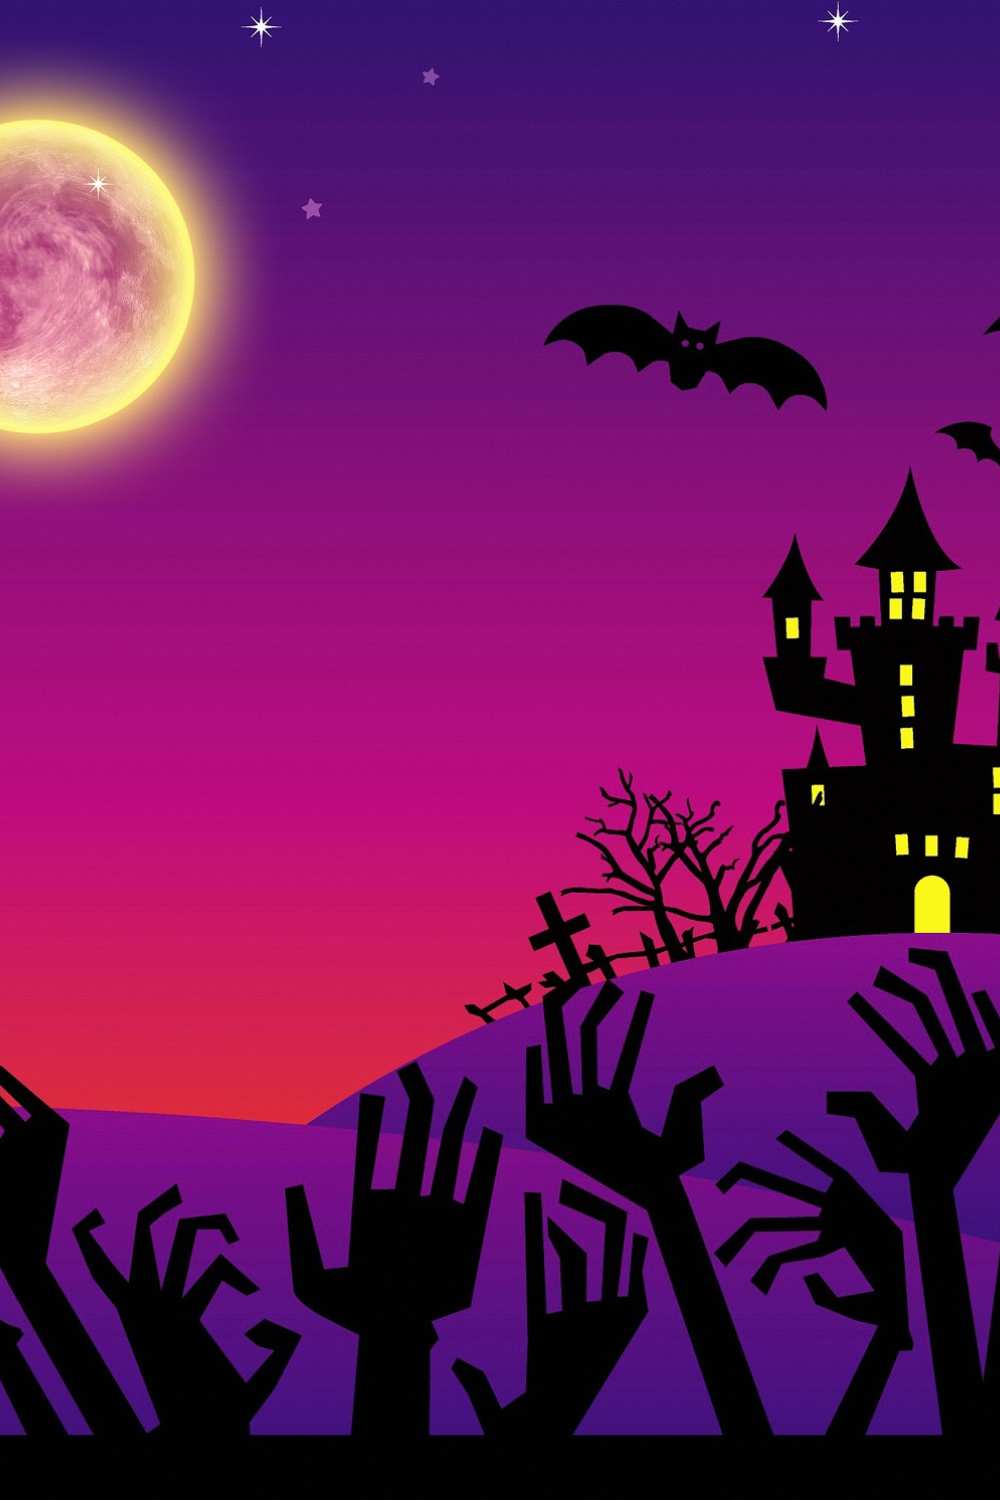 Not Spooky Halloween Castle Shadow Full Moon Backdrop IBD-246886 size:1x1.5